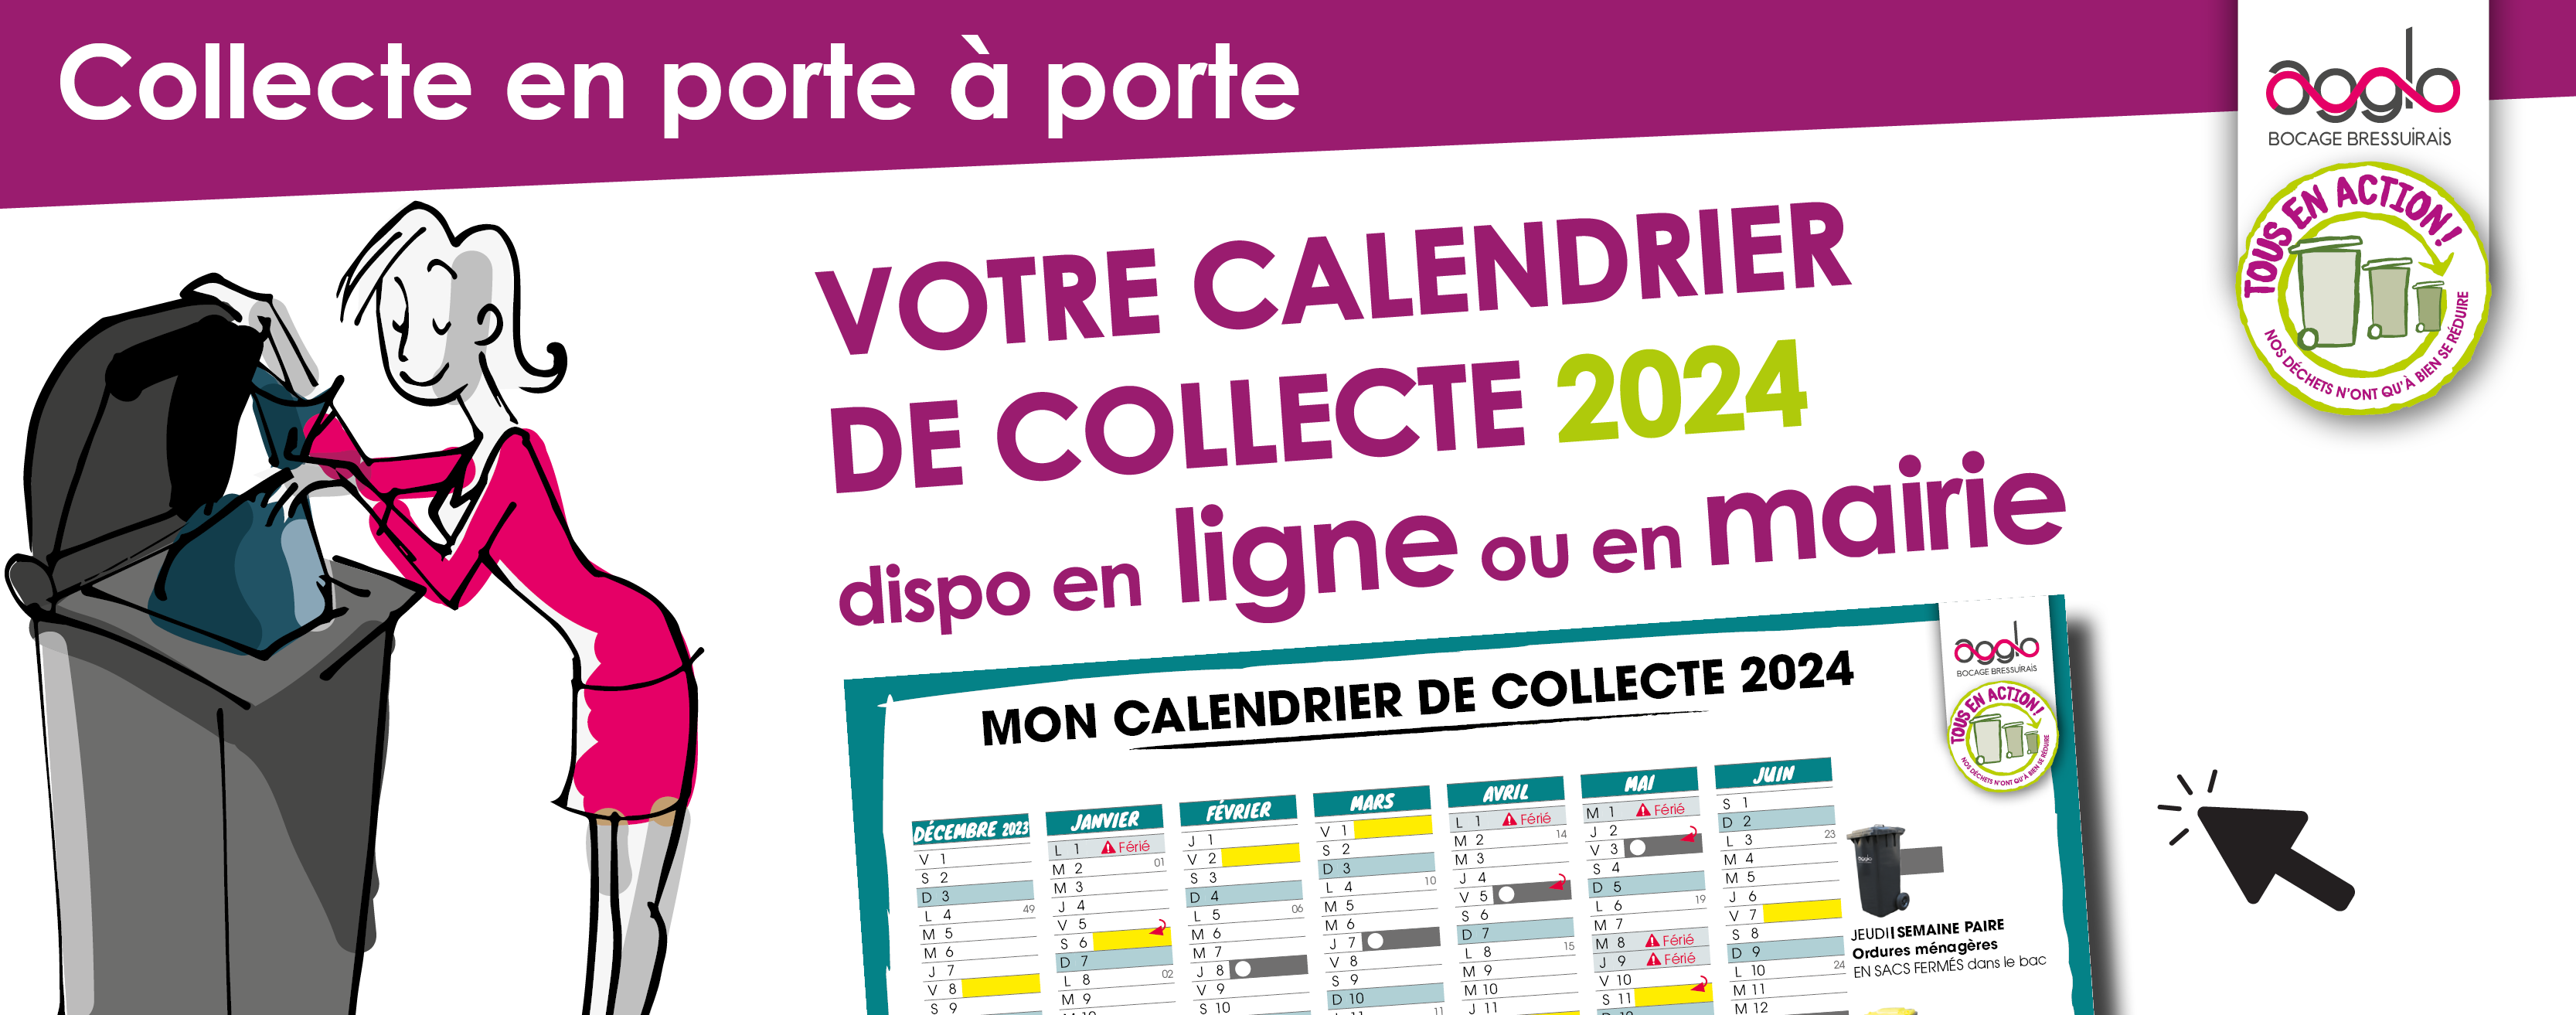 Le calendrier 2024 est arrivé - Jaligny-sur-Besbre (03220)